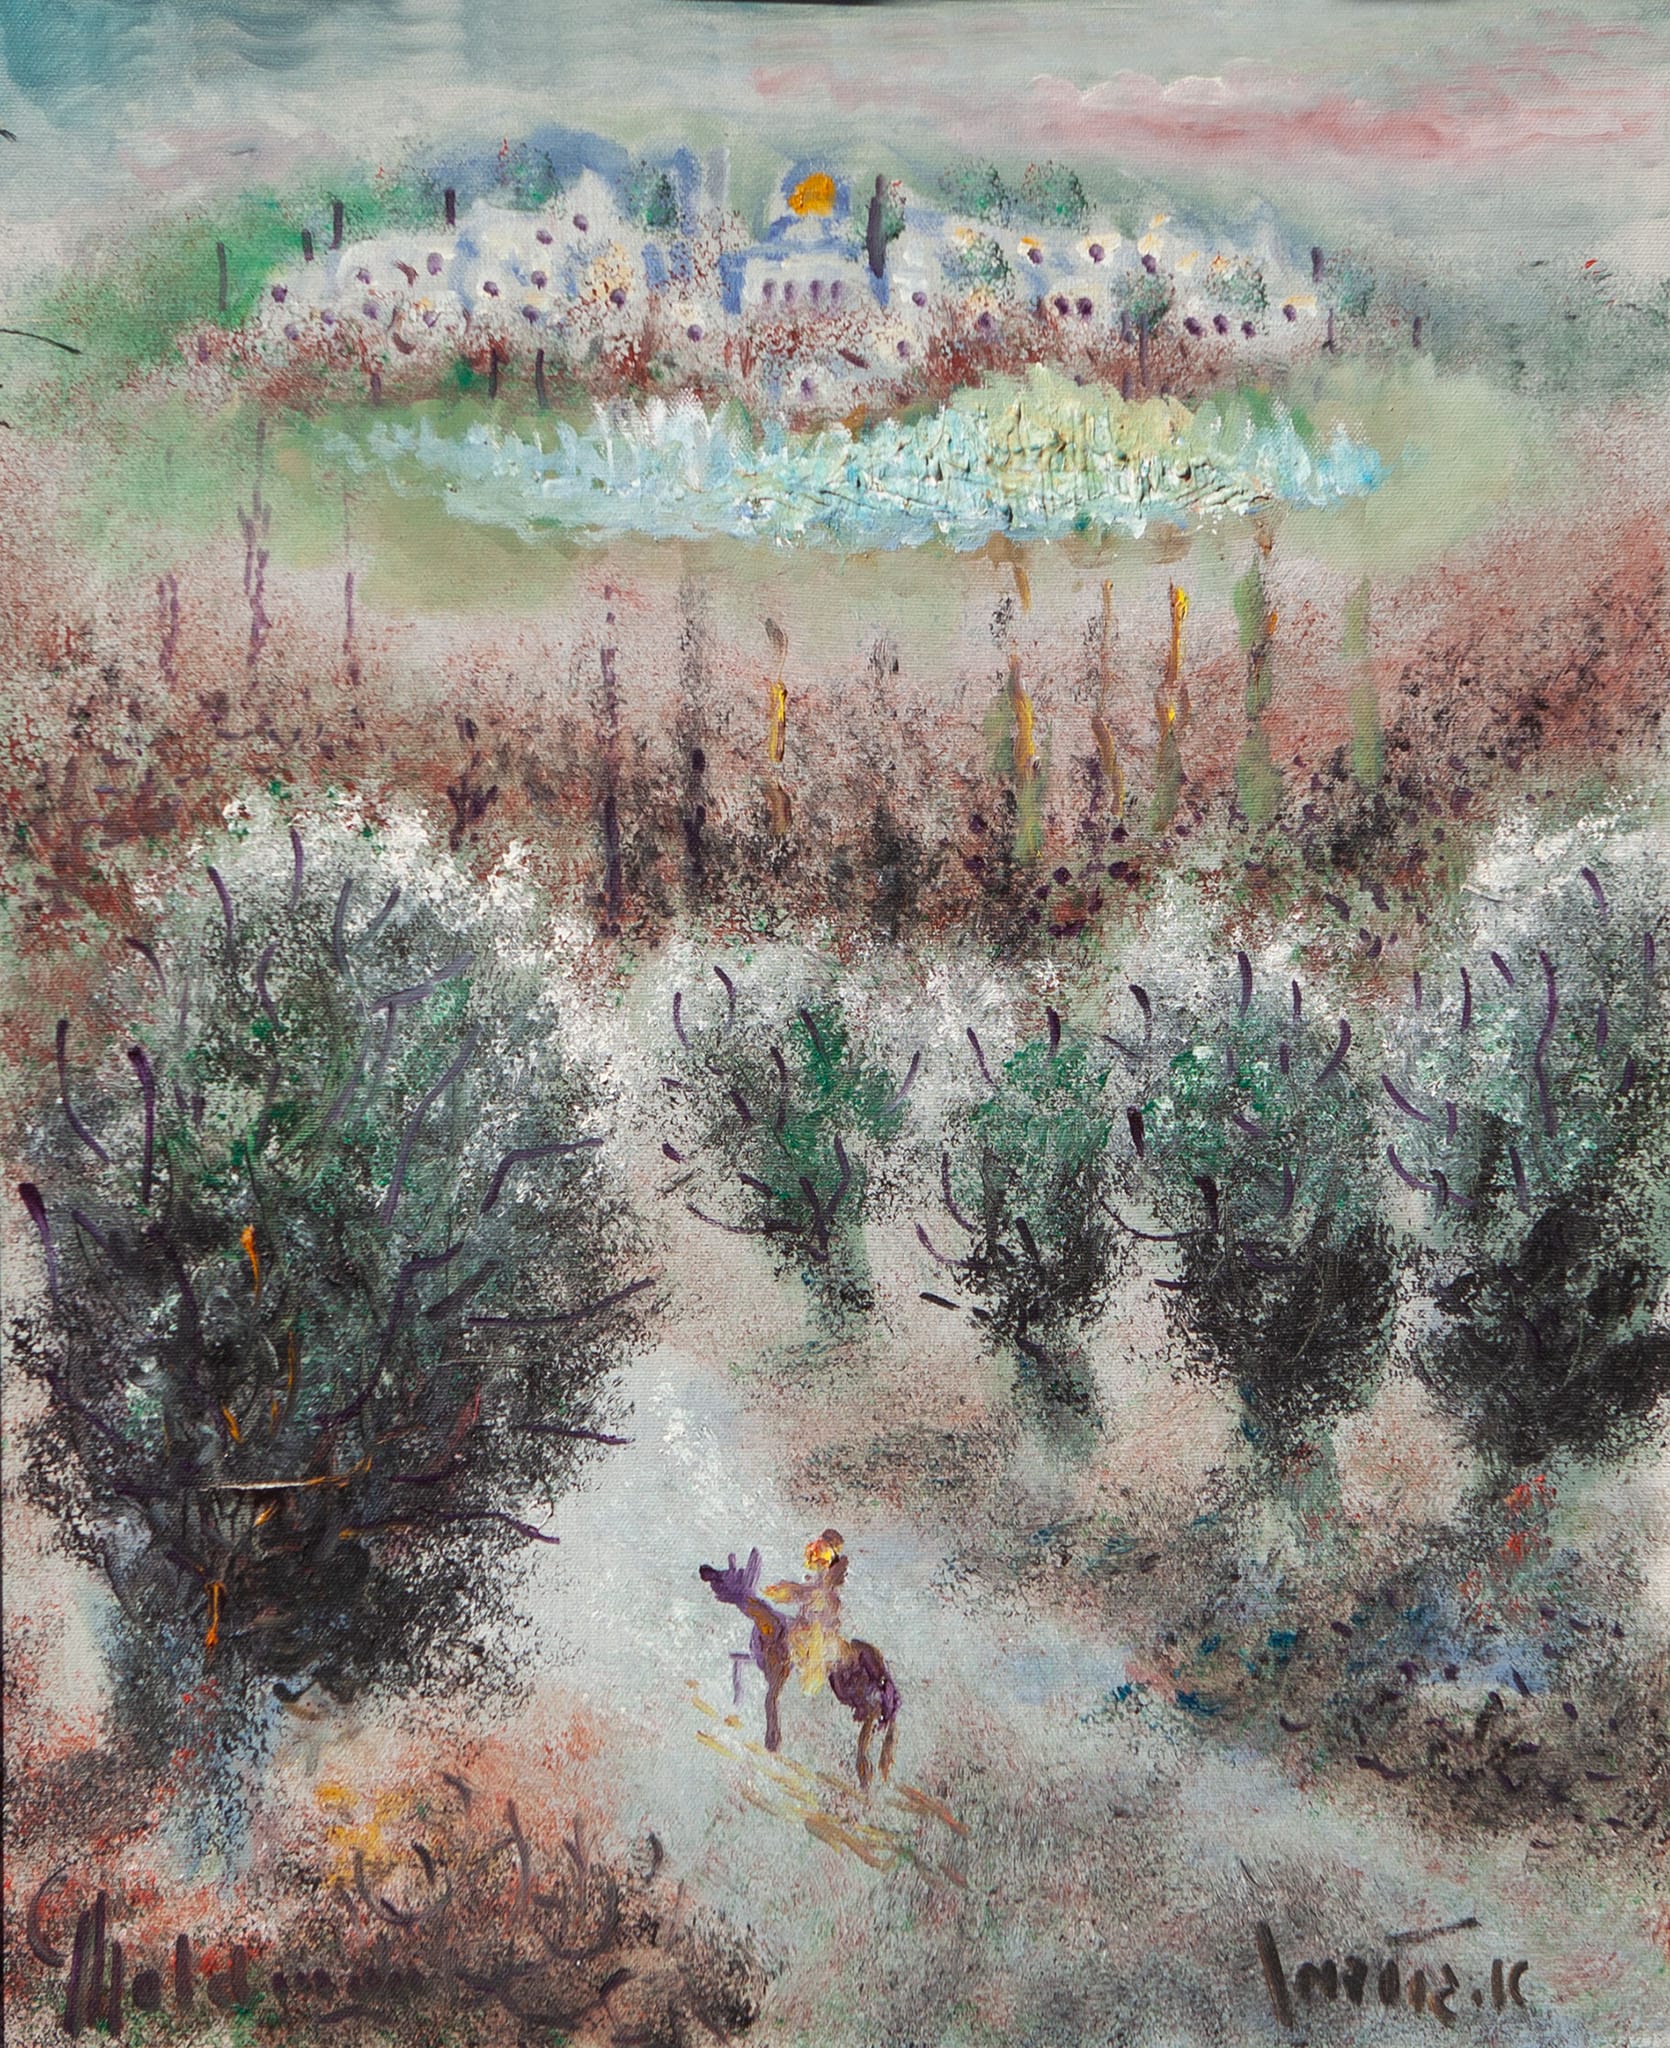 אלברט גולדמן, "הרי ירושלים", שמן על בד, 60x48 ס"מ